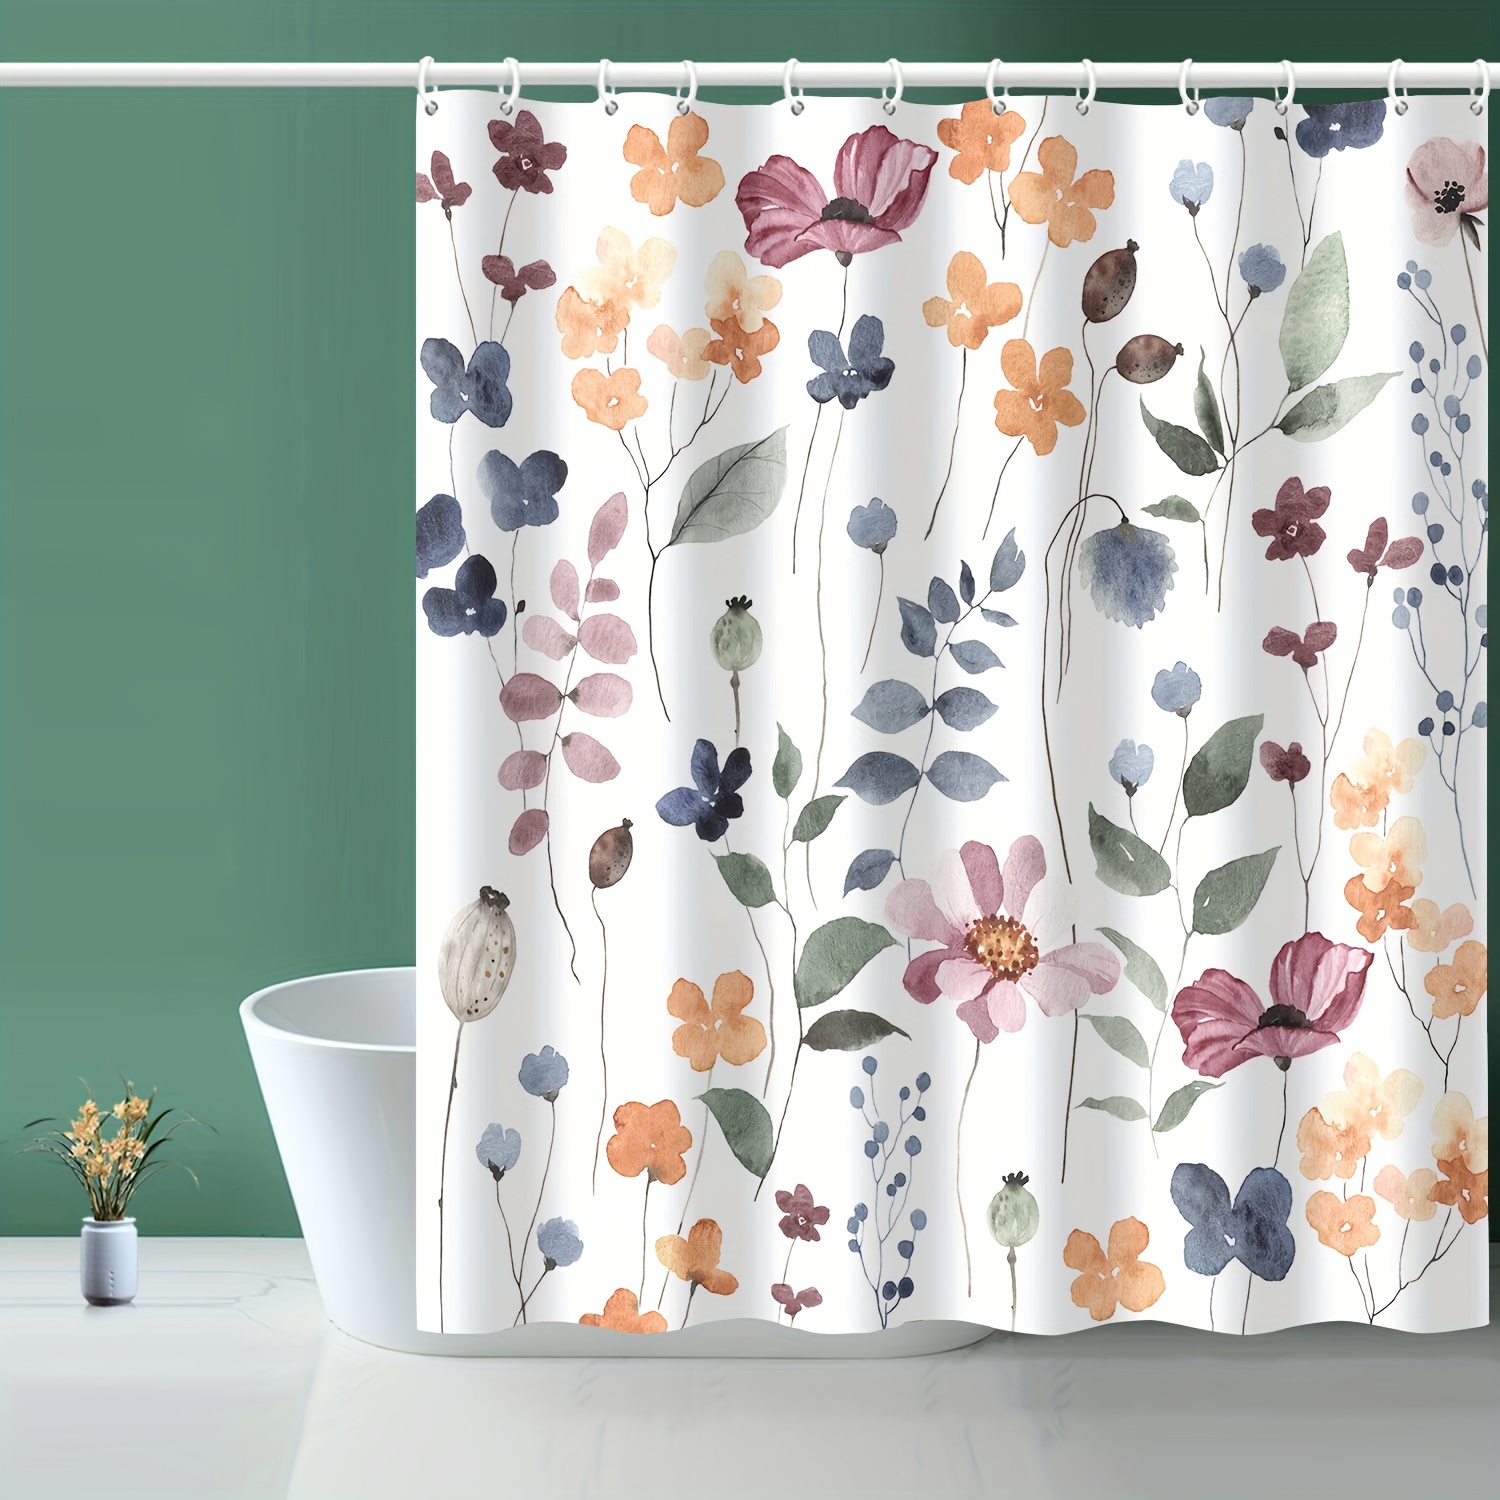 Forro de cortina de ducha transparente Patrón de guijarros 72x72 pulgadas